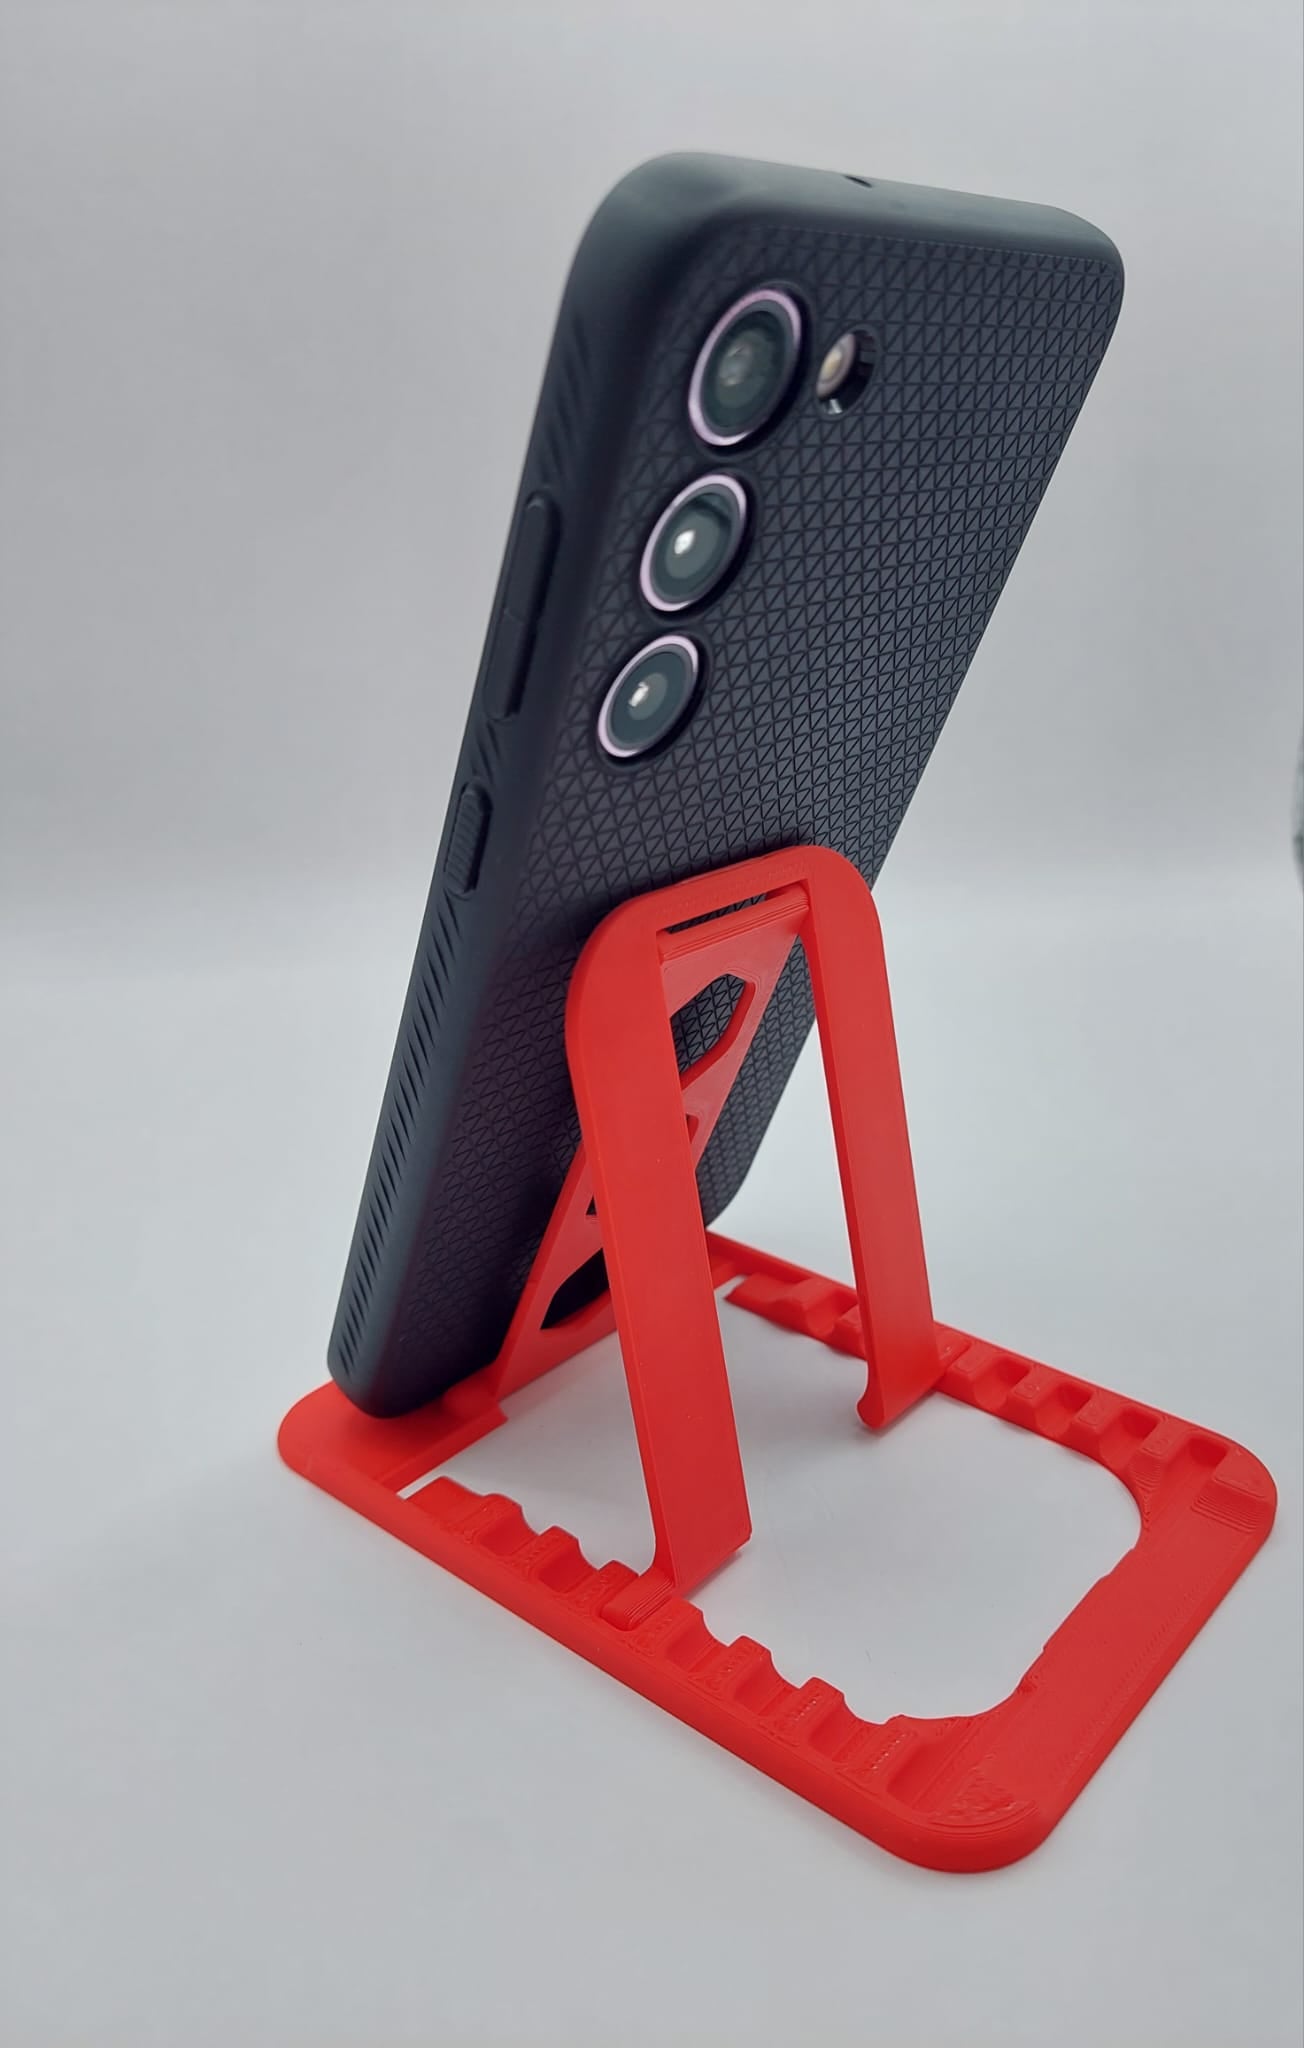 Suport telefon printat 3D